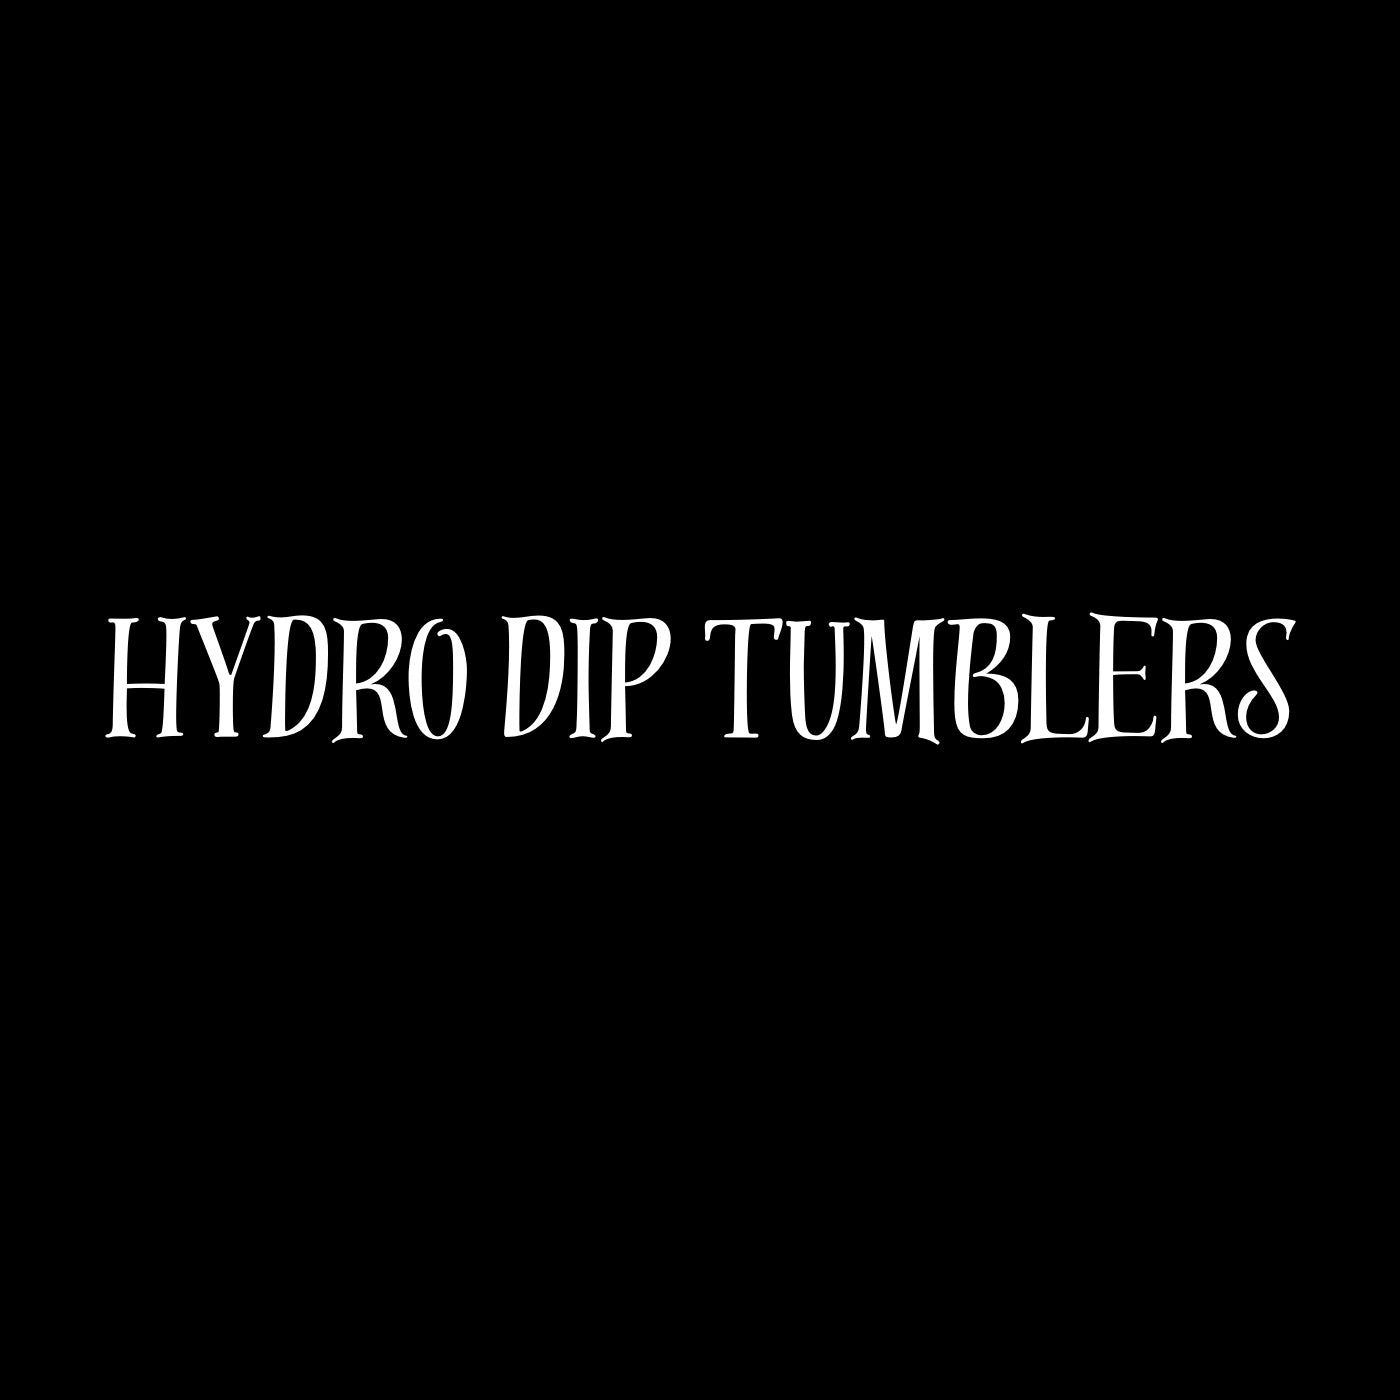 Hydro dip Tumblers